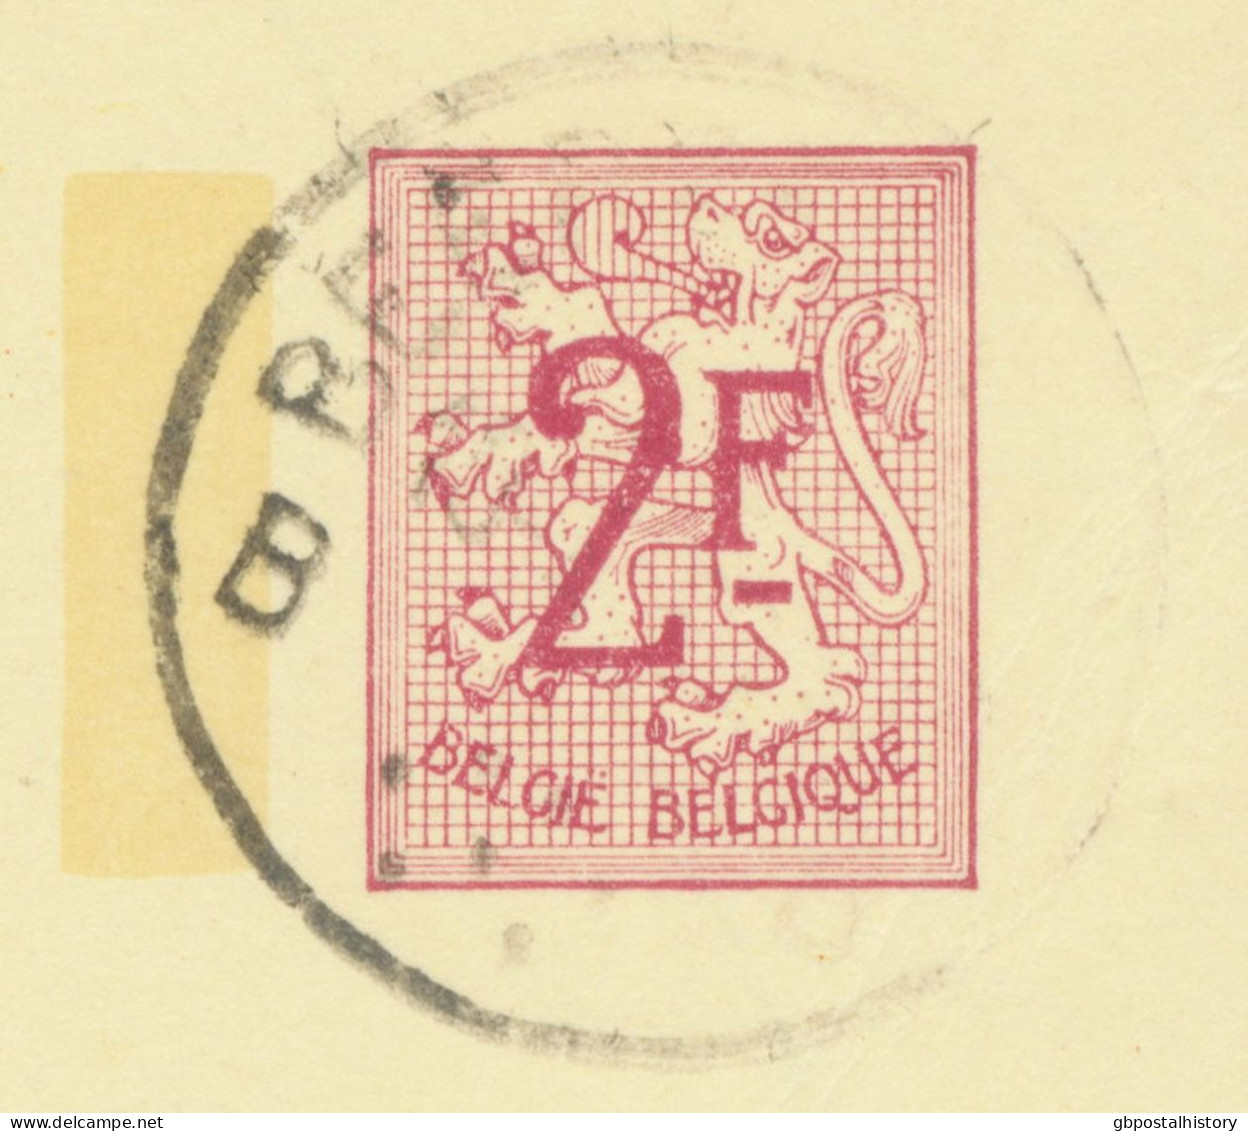 BELGIUM VILLAGE POSTMARKS  BEERZEL B (now Putte) SC With Dots 1969 (Postal Stationery 2 F, PUBLIBEL 2298 N) - Oblitérations à Points